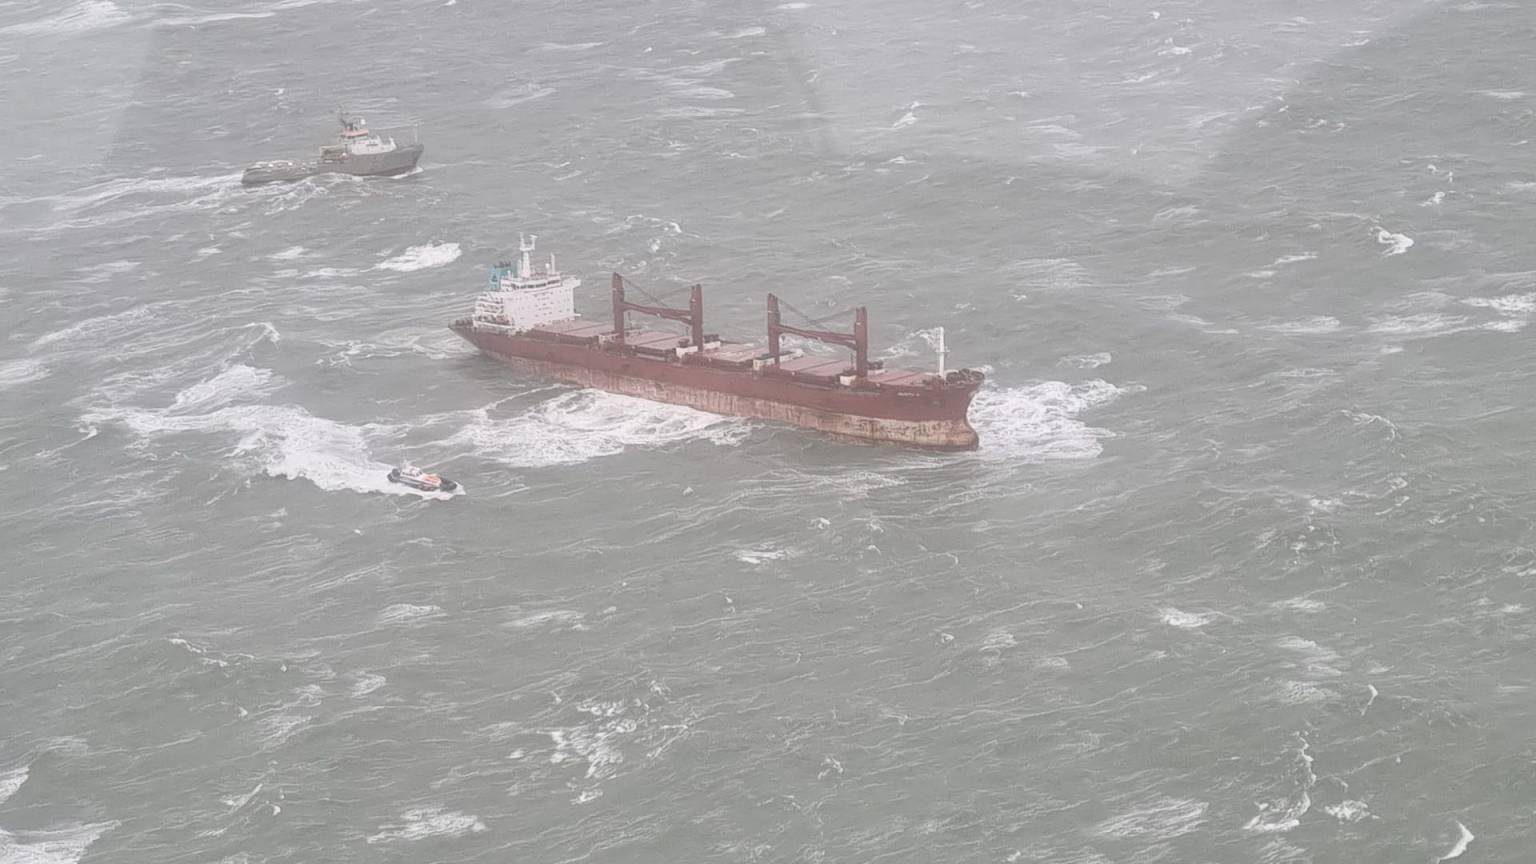 Tugs Rescue Abandoned Bulk Carrier Off Dutch Coast -Update